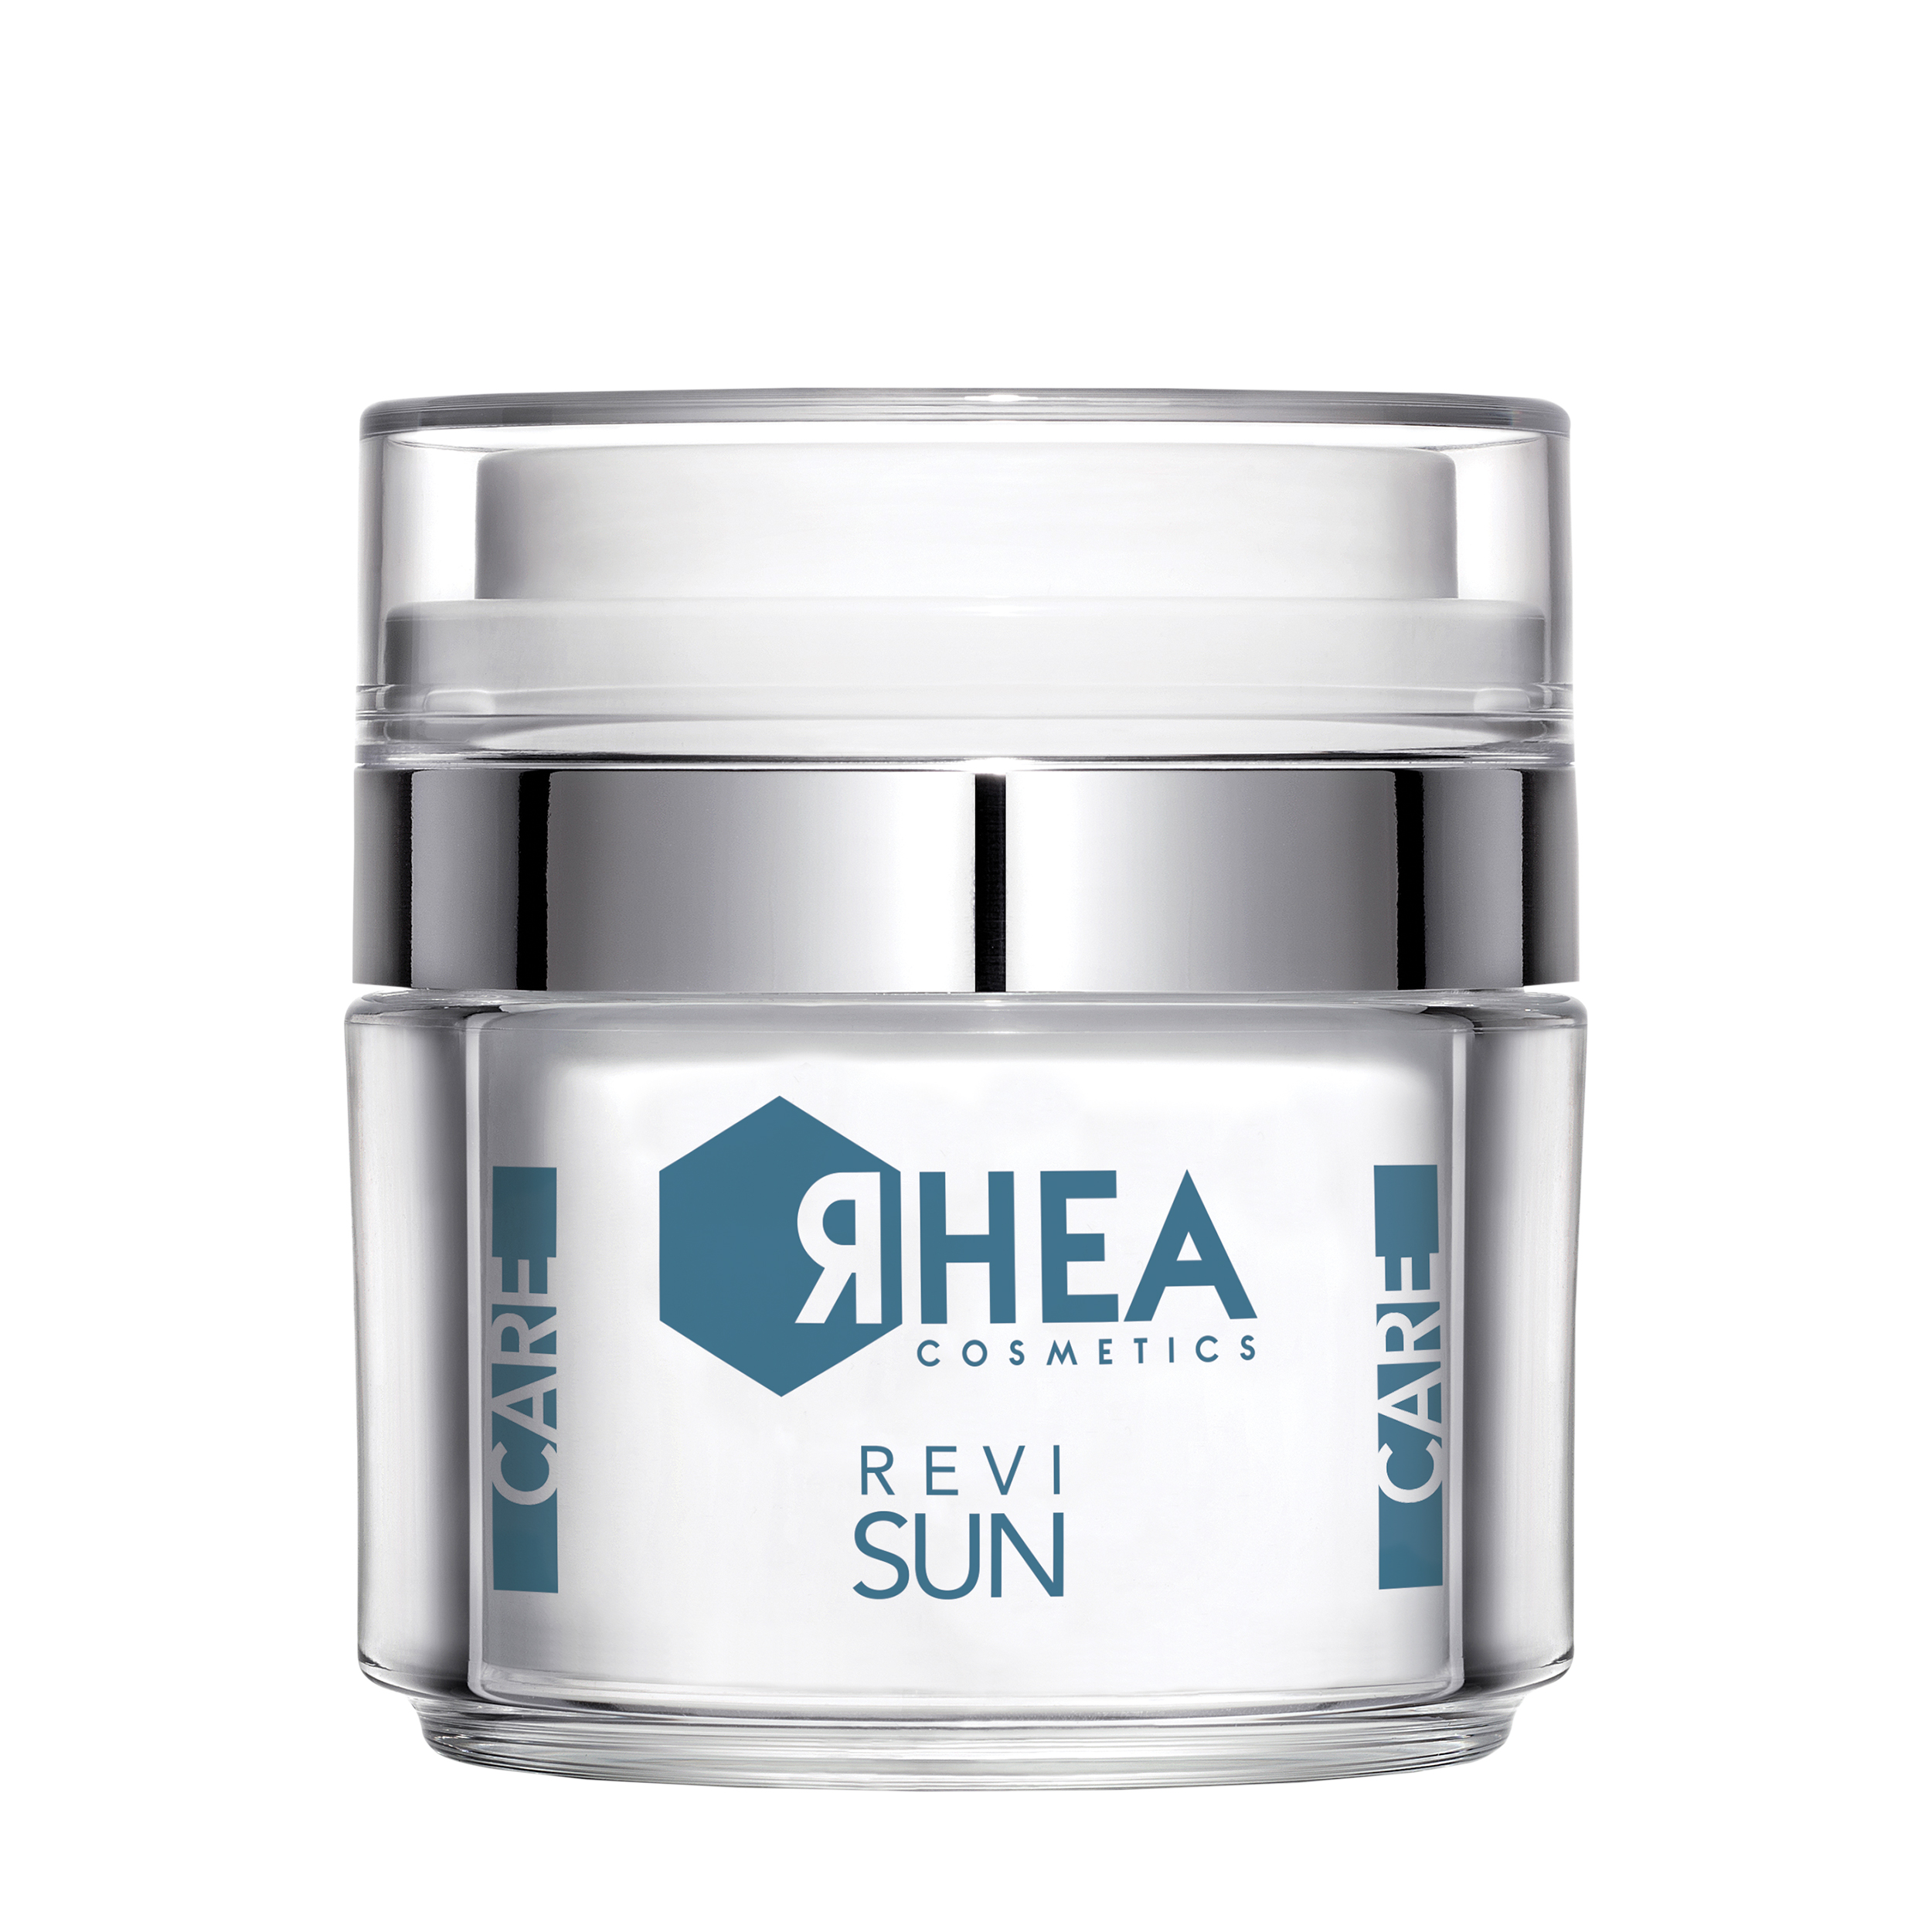 RHEA RHEA ReviSun, 50 ml - Ревитализирующий антиоксидантный крем для лица перед и после солнечного воздействия 50 мл